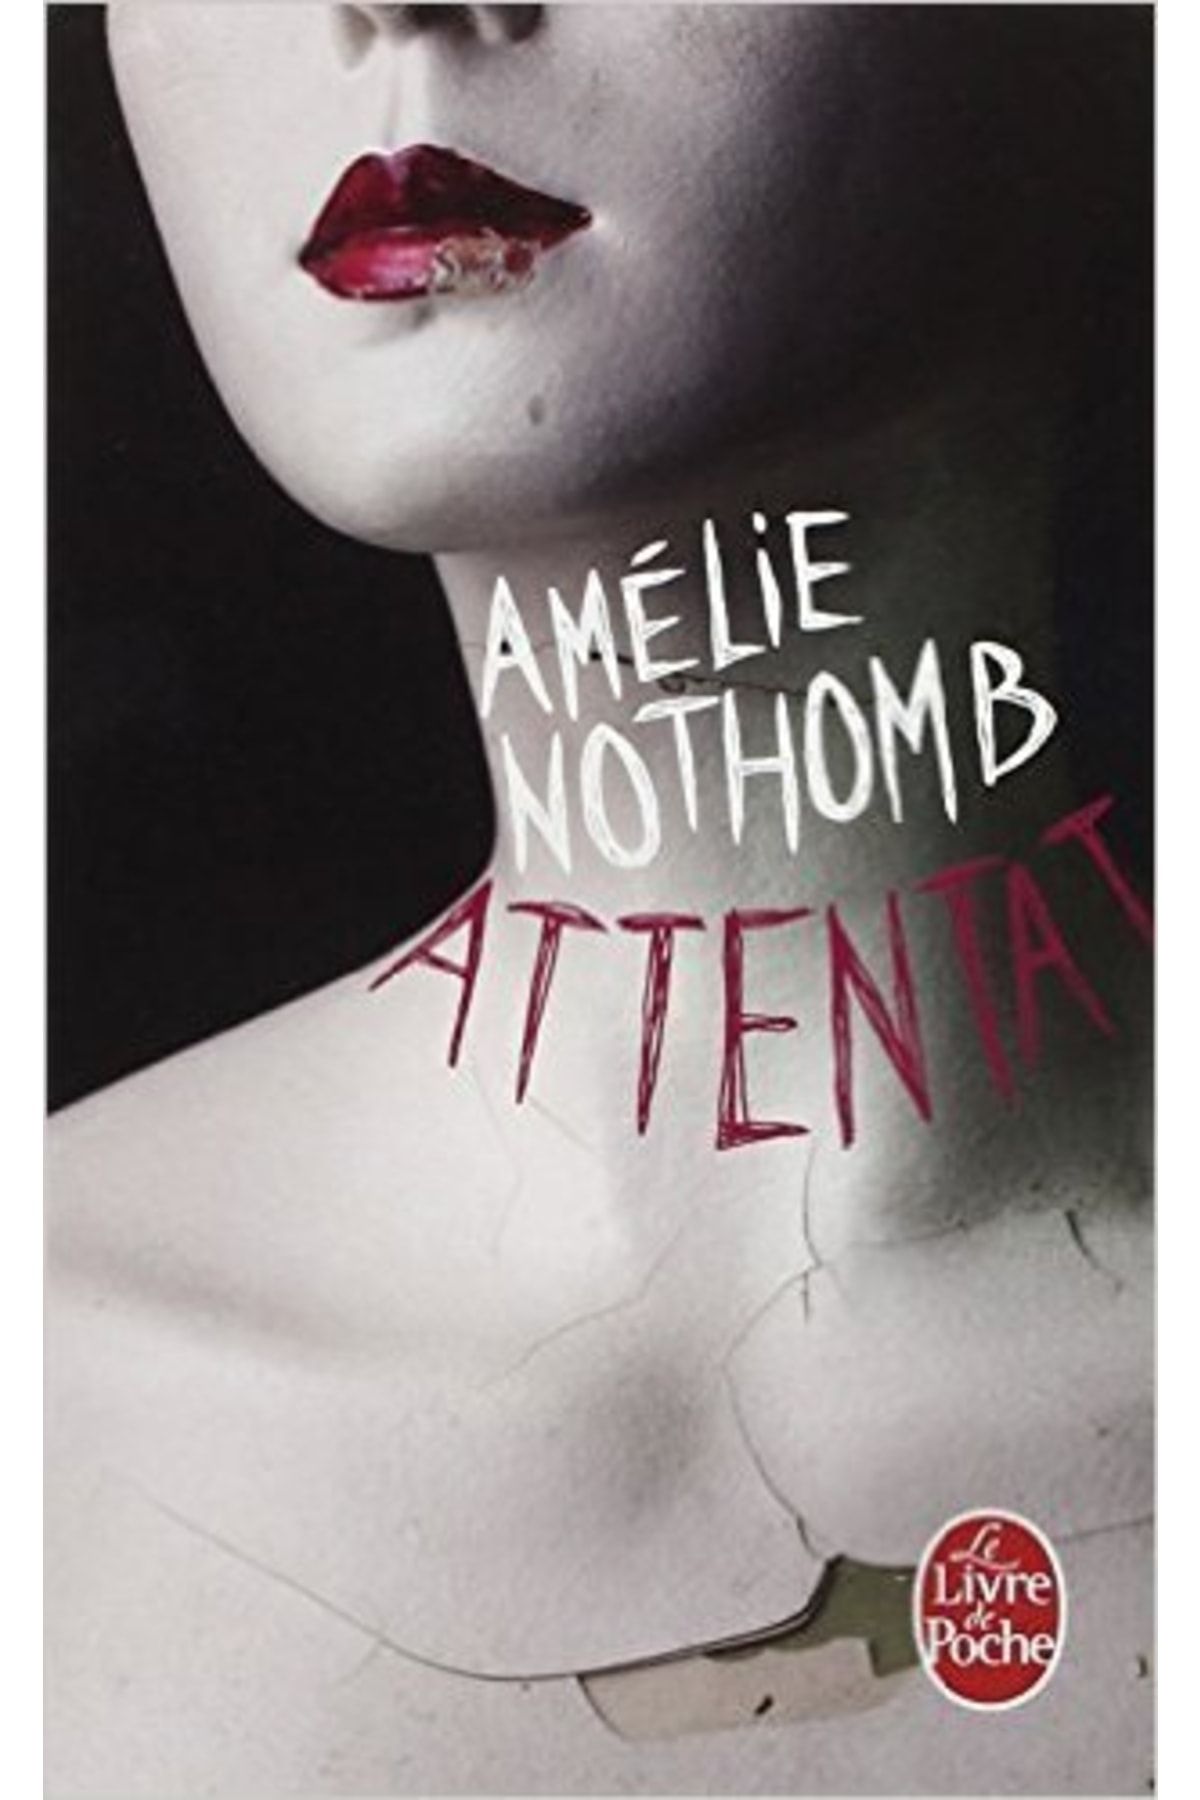 Le Livre de Poche Attentat Amelie Nothomb